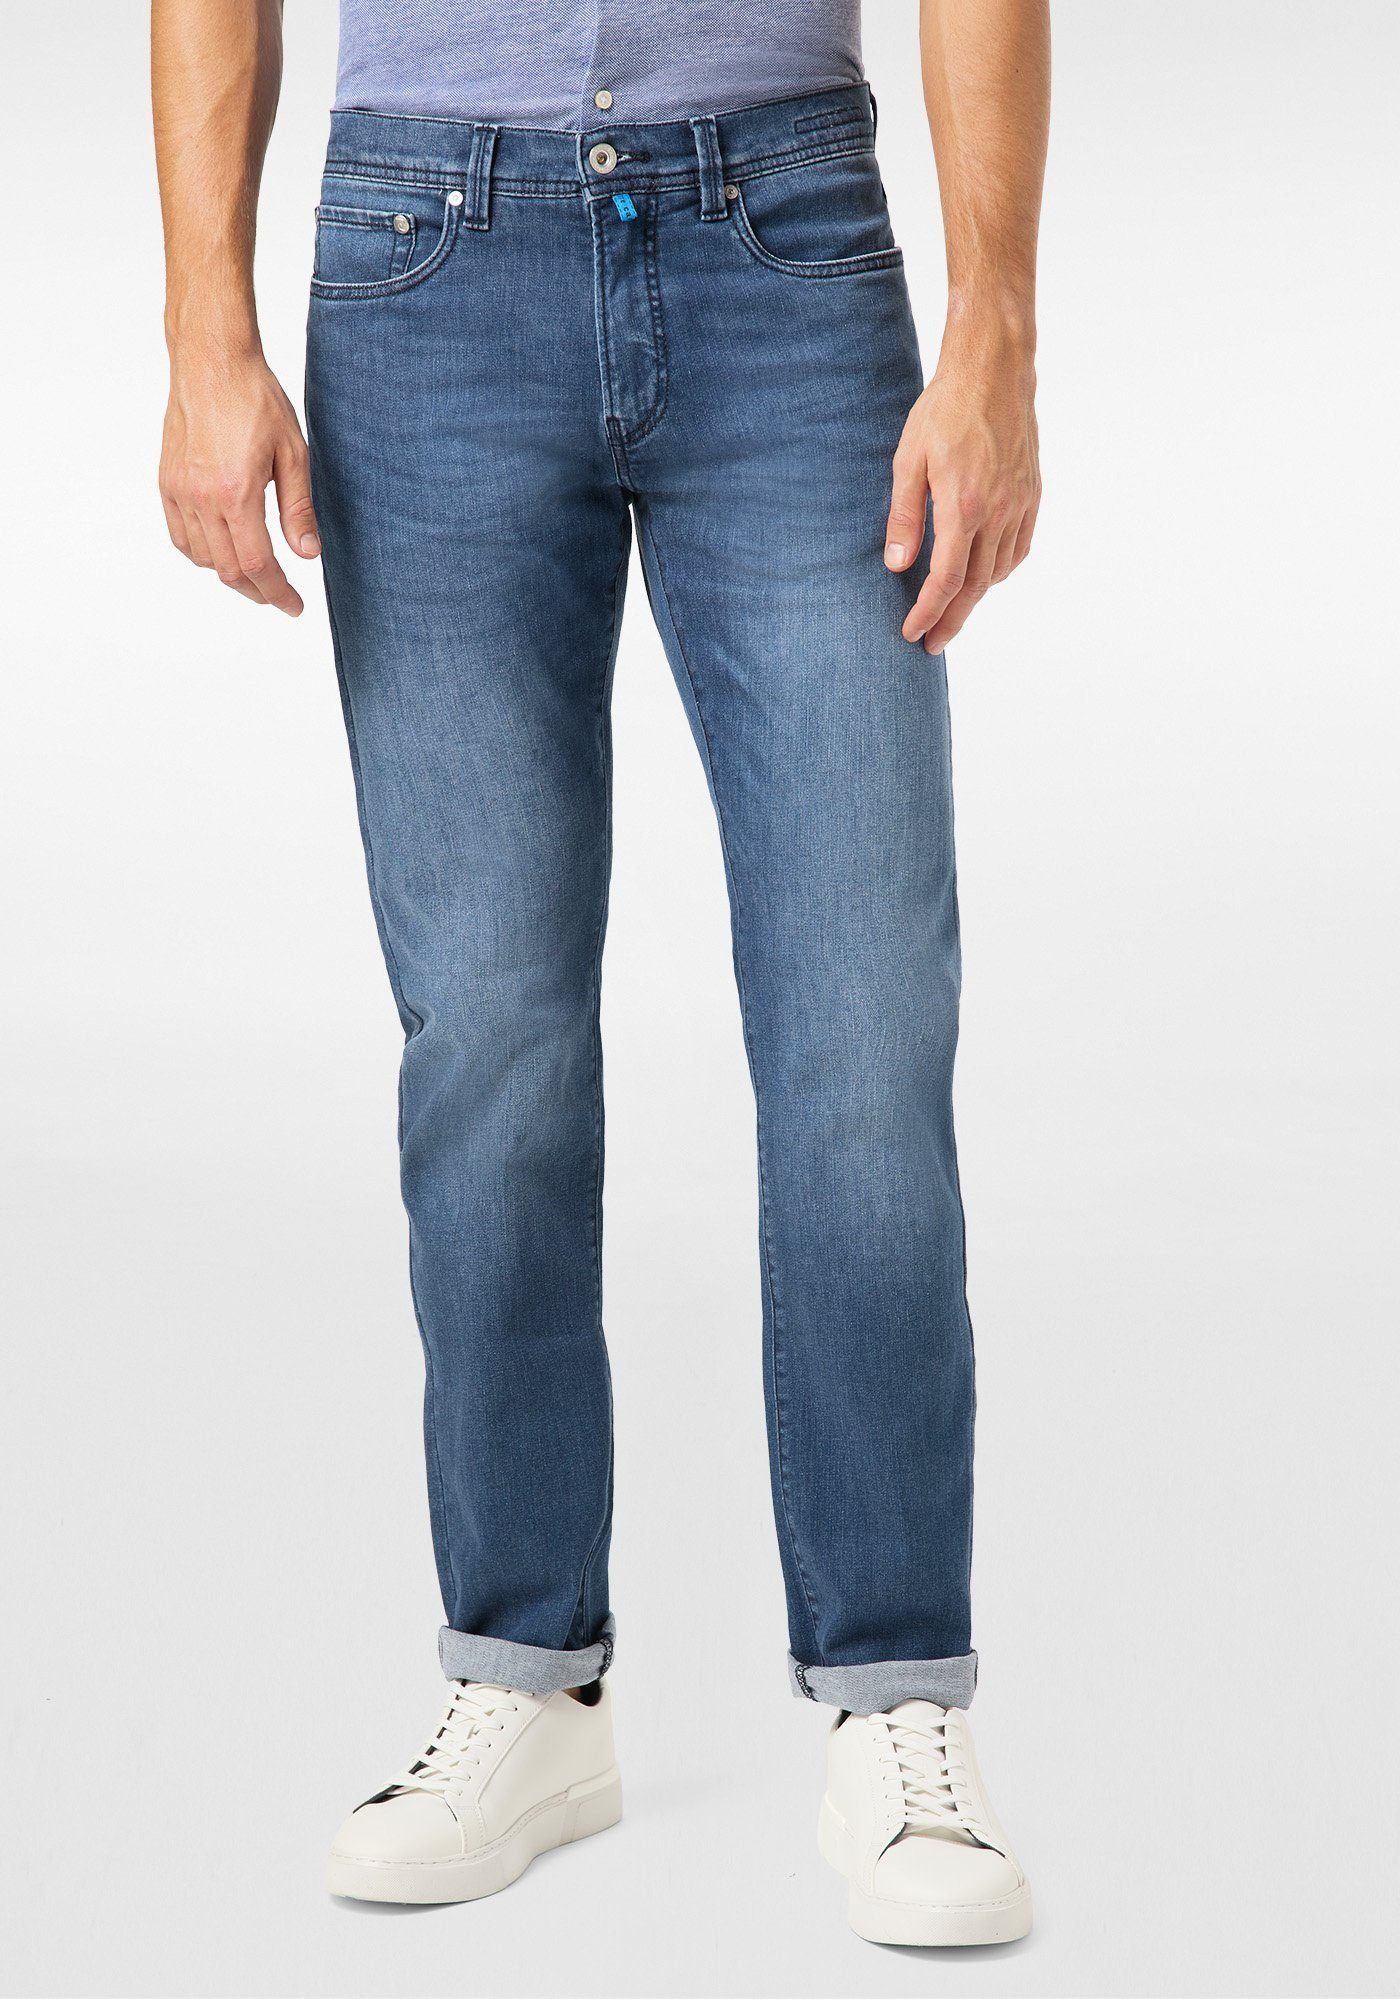 Pierre Cardin 5-Pocket-Jeans »Lyon Tapered« Futureflex online kaufen | OTTO